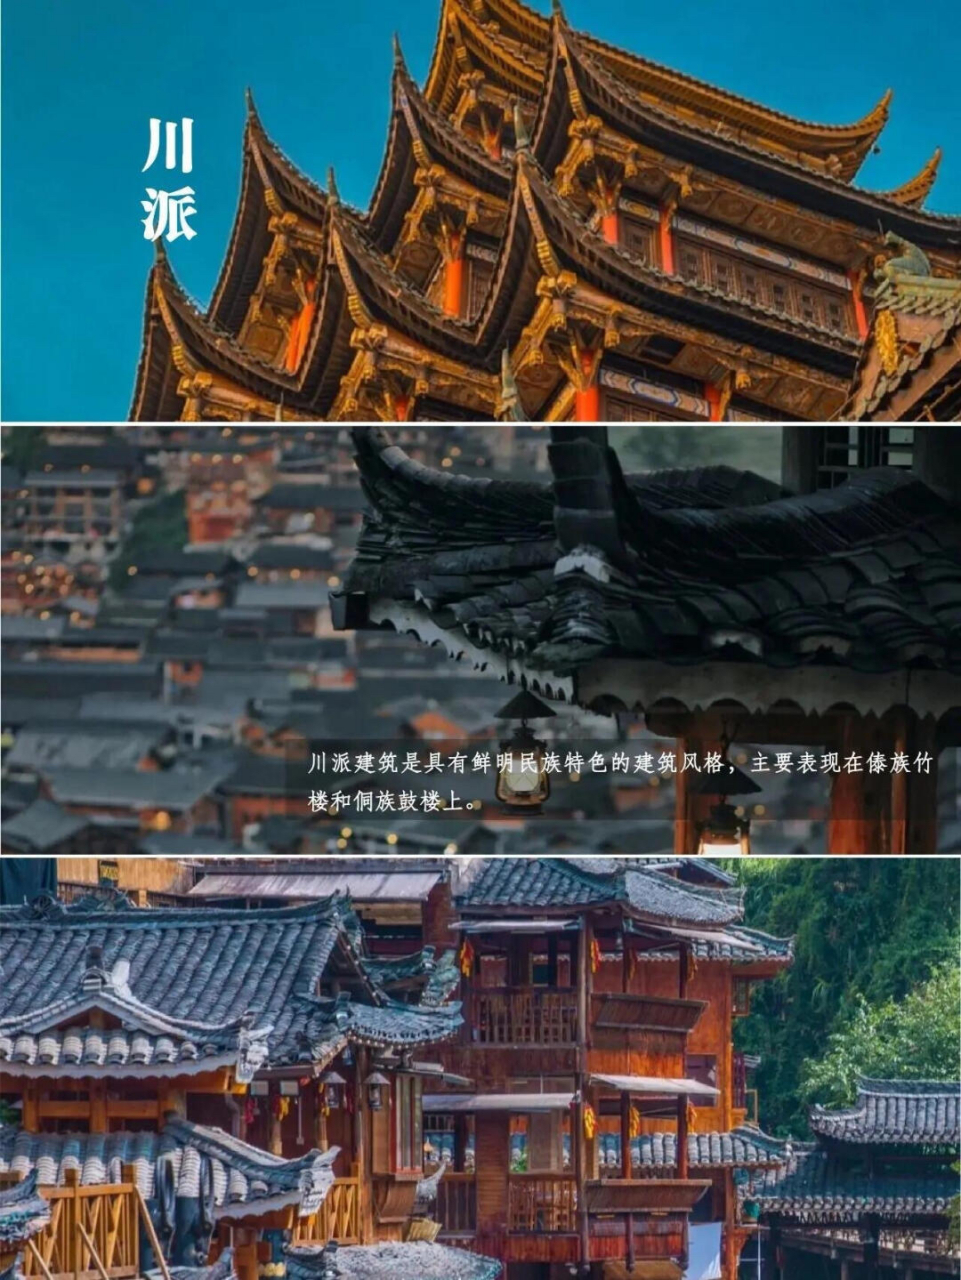 京派 京派建筑是中国北方建筑的主要流派之一,以四合院为代表